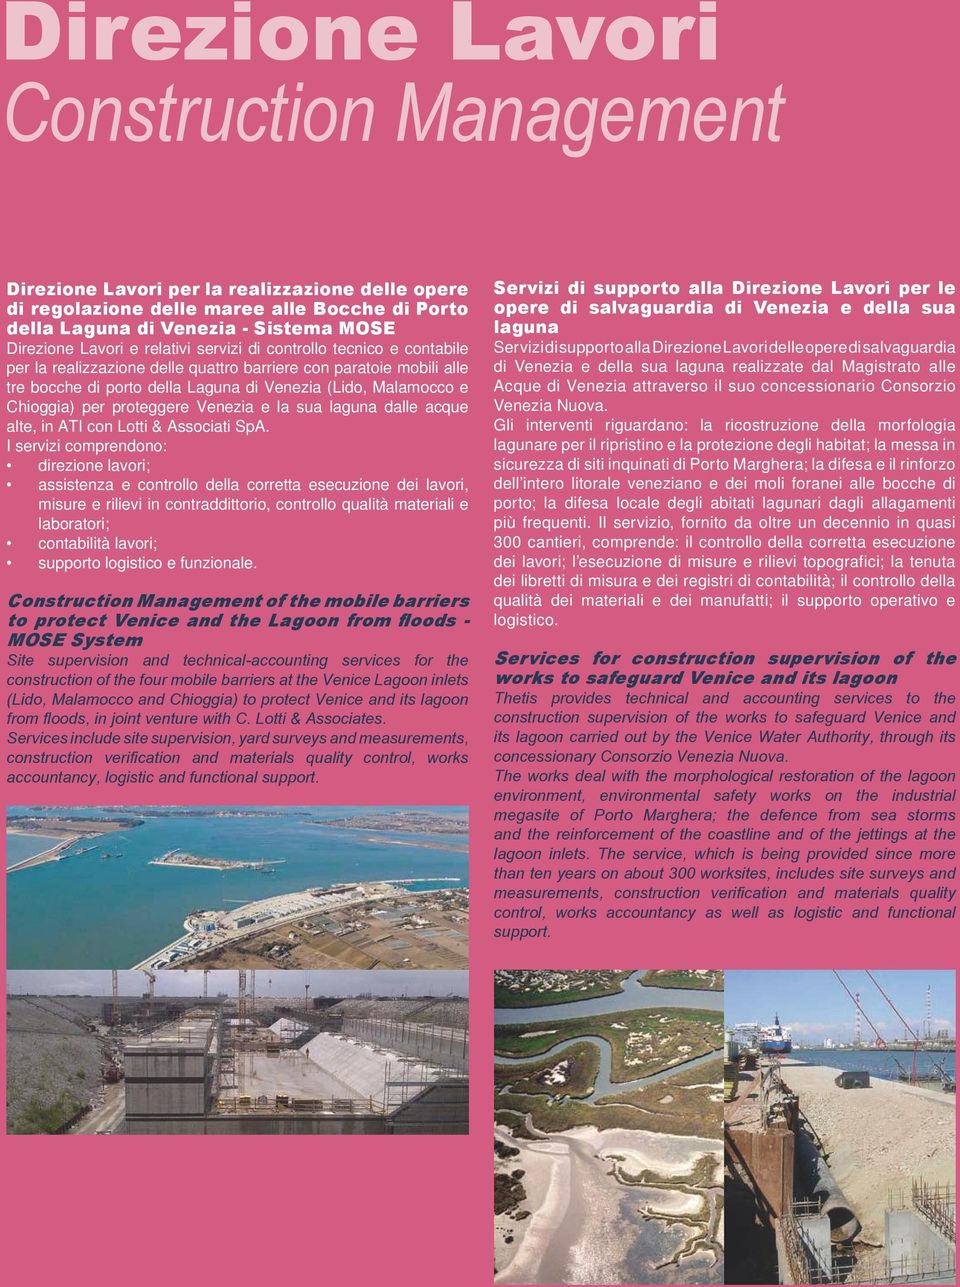 proteggere Venezia e la sua laguna dalle acque alte, in ATI con Lotti & Associati SpA.